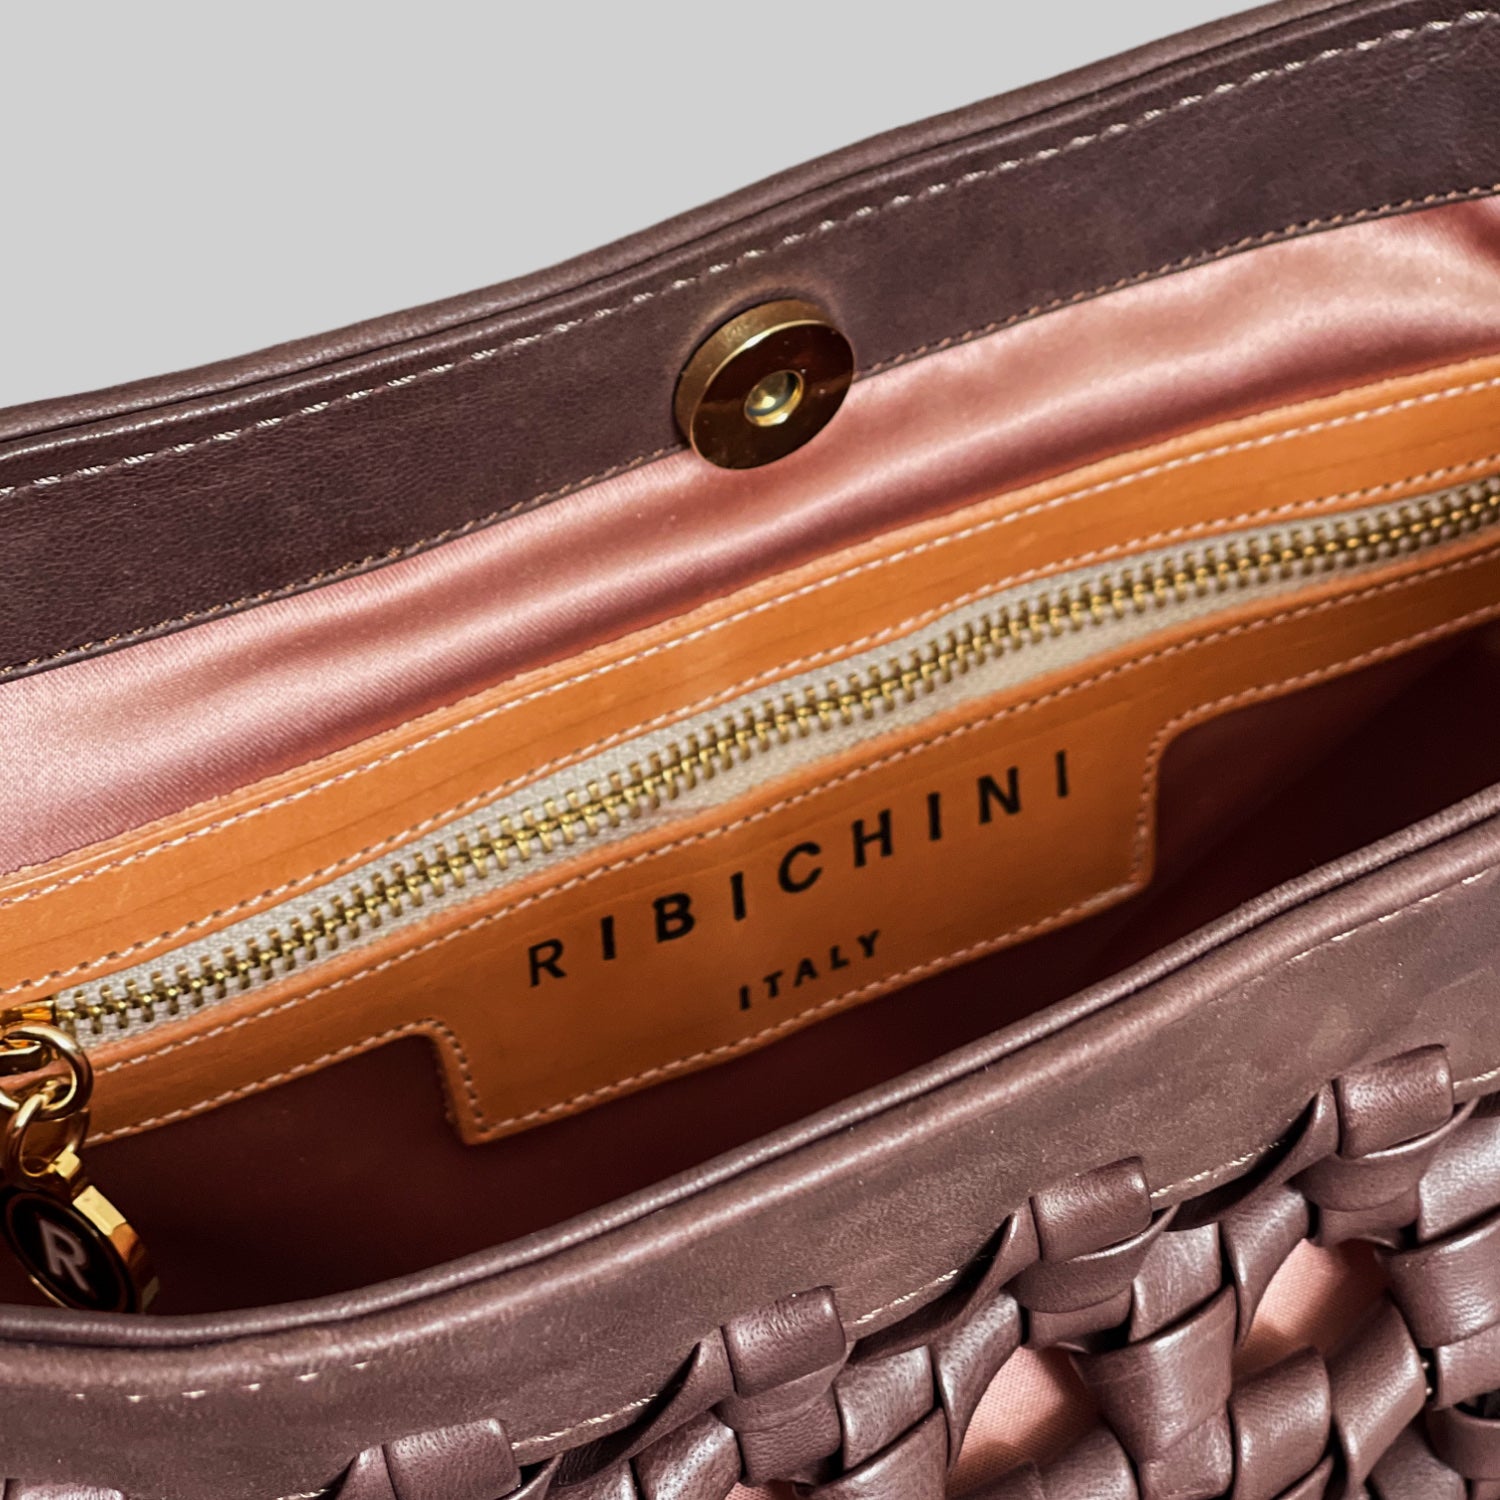 Innsiden av Ribichini Donna-vesken har et silkemykt, lysrosa fôr og en elegant lærpatch med "RIBICHINI ITALY" i gullskrift. En praktisk glidelåslomme med gyllen glidelås legger til funksjonalitet.